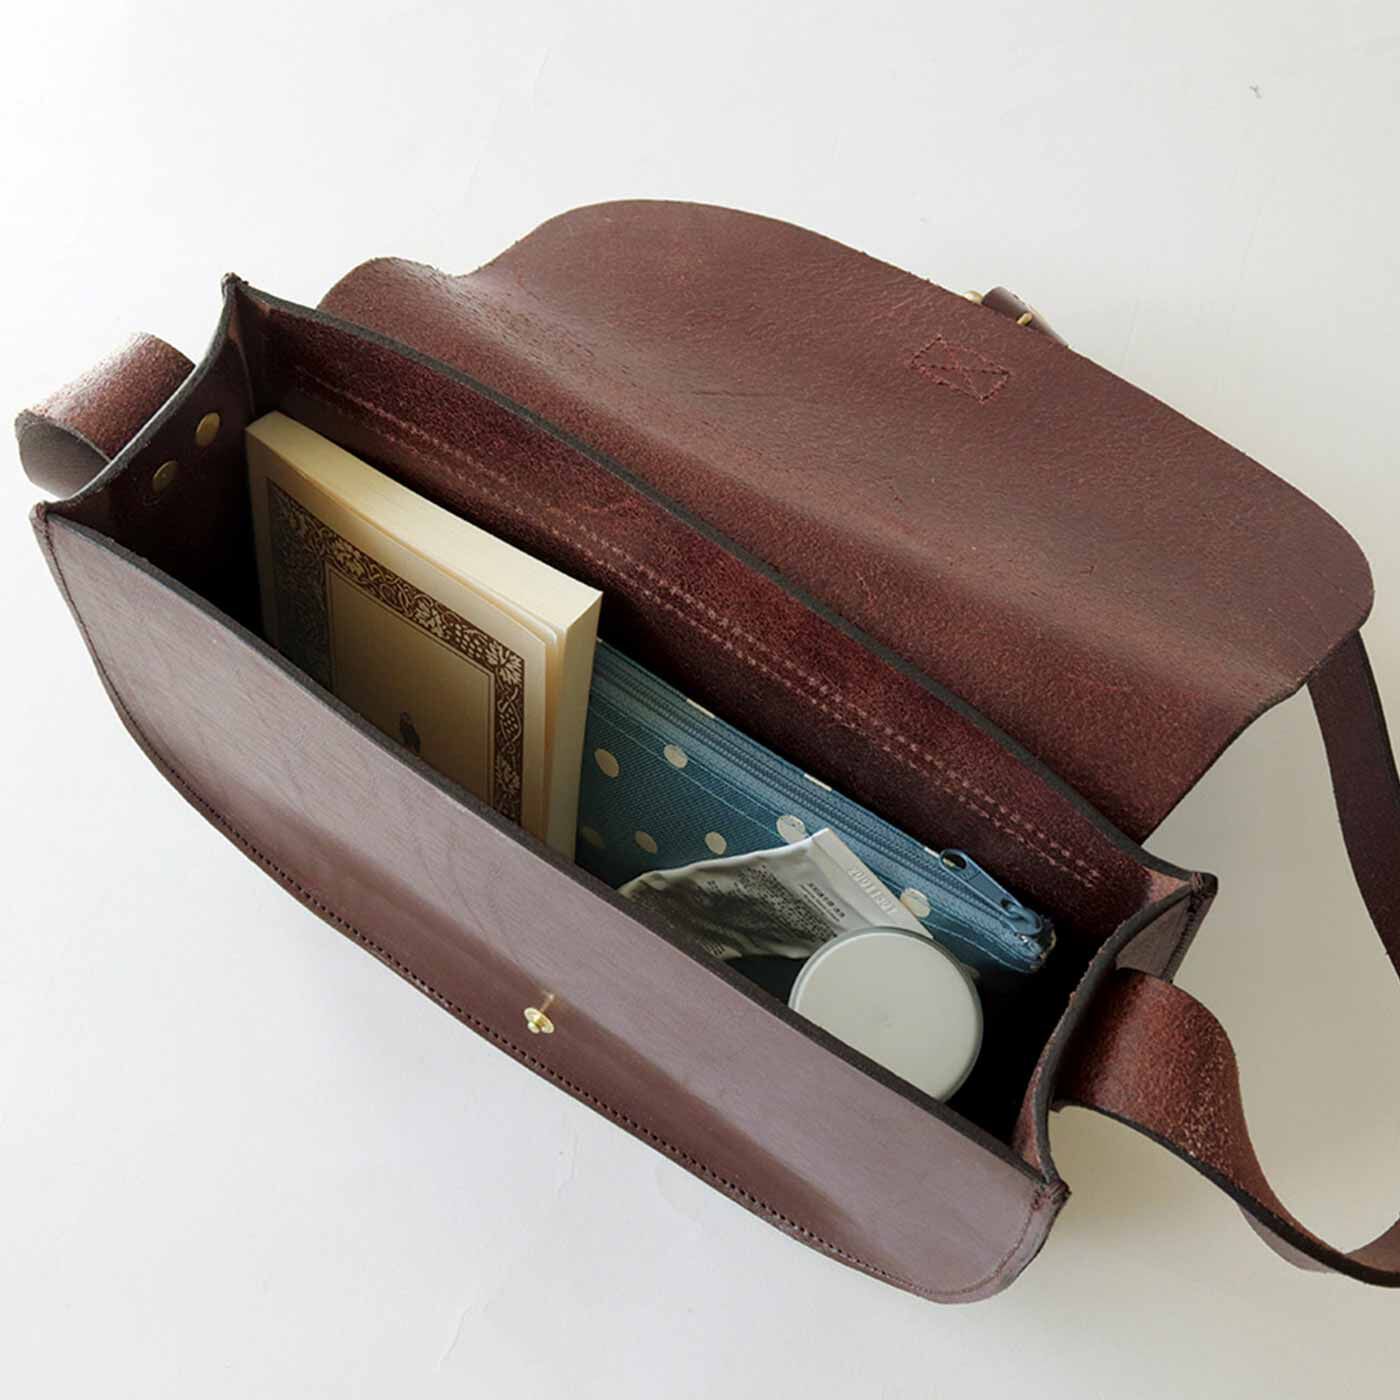 ＆Stories|福岡の鞄作家と作った 職人本革のフォートバッグ〈ウッドブラウン〉[本革　鞄：日本製]|文庫本・財布・ポーチ・小さめの水筒なども入ります。